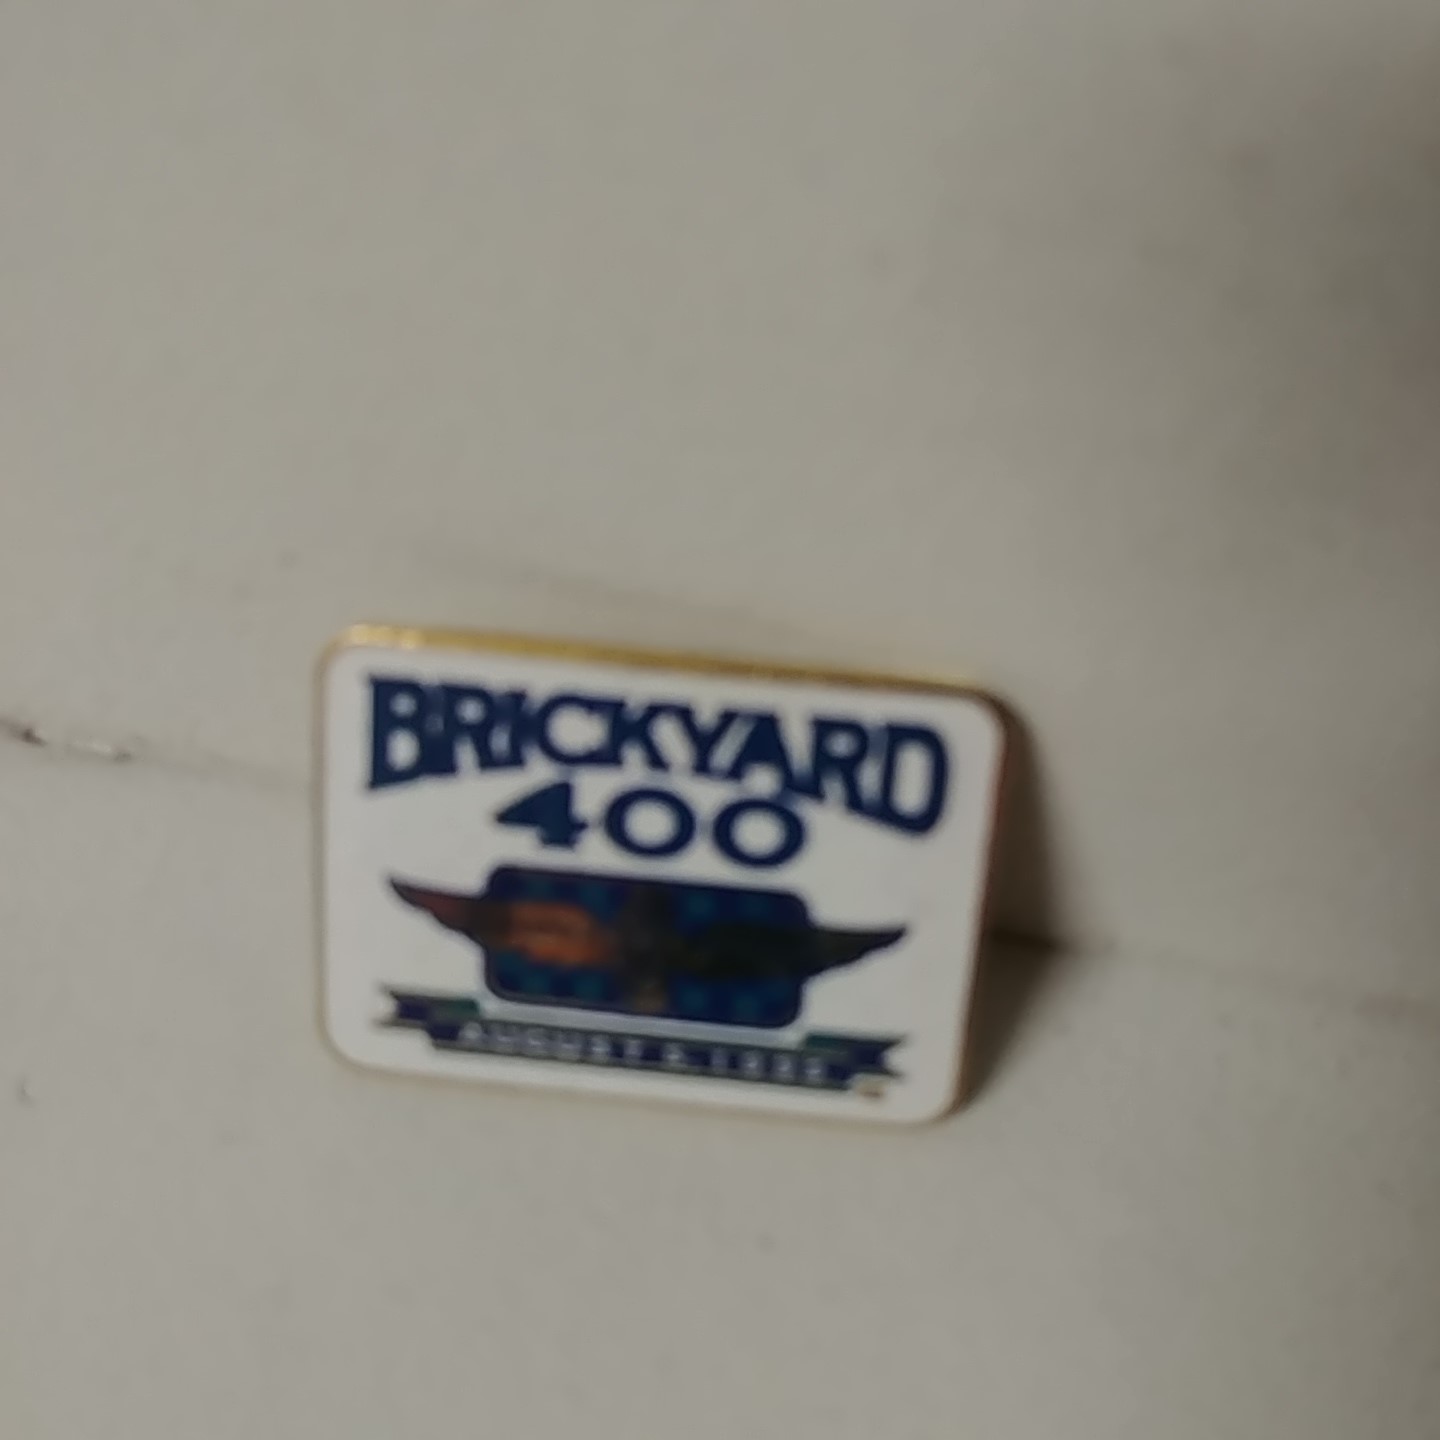 1995 Brickyard 400 Indianapolis Motor Speedway hatpin